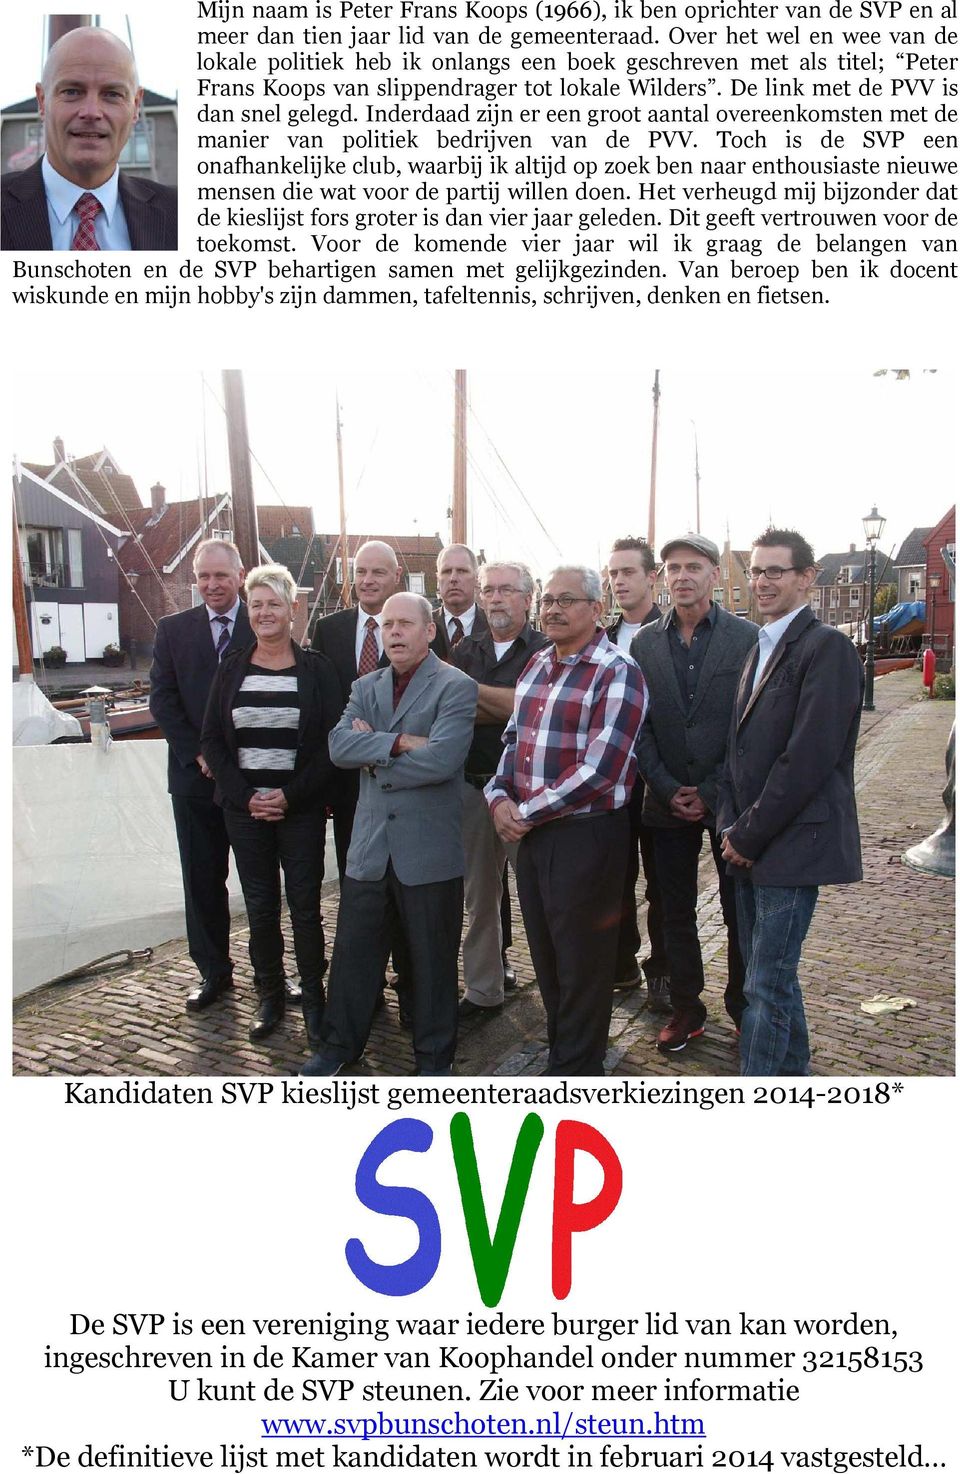 Inderdaad zijn er een groot aantal overeenkomsten met de manier van politiek bedrijven van de PVV.